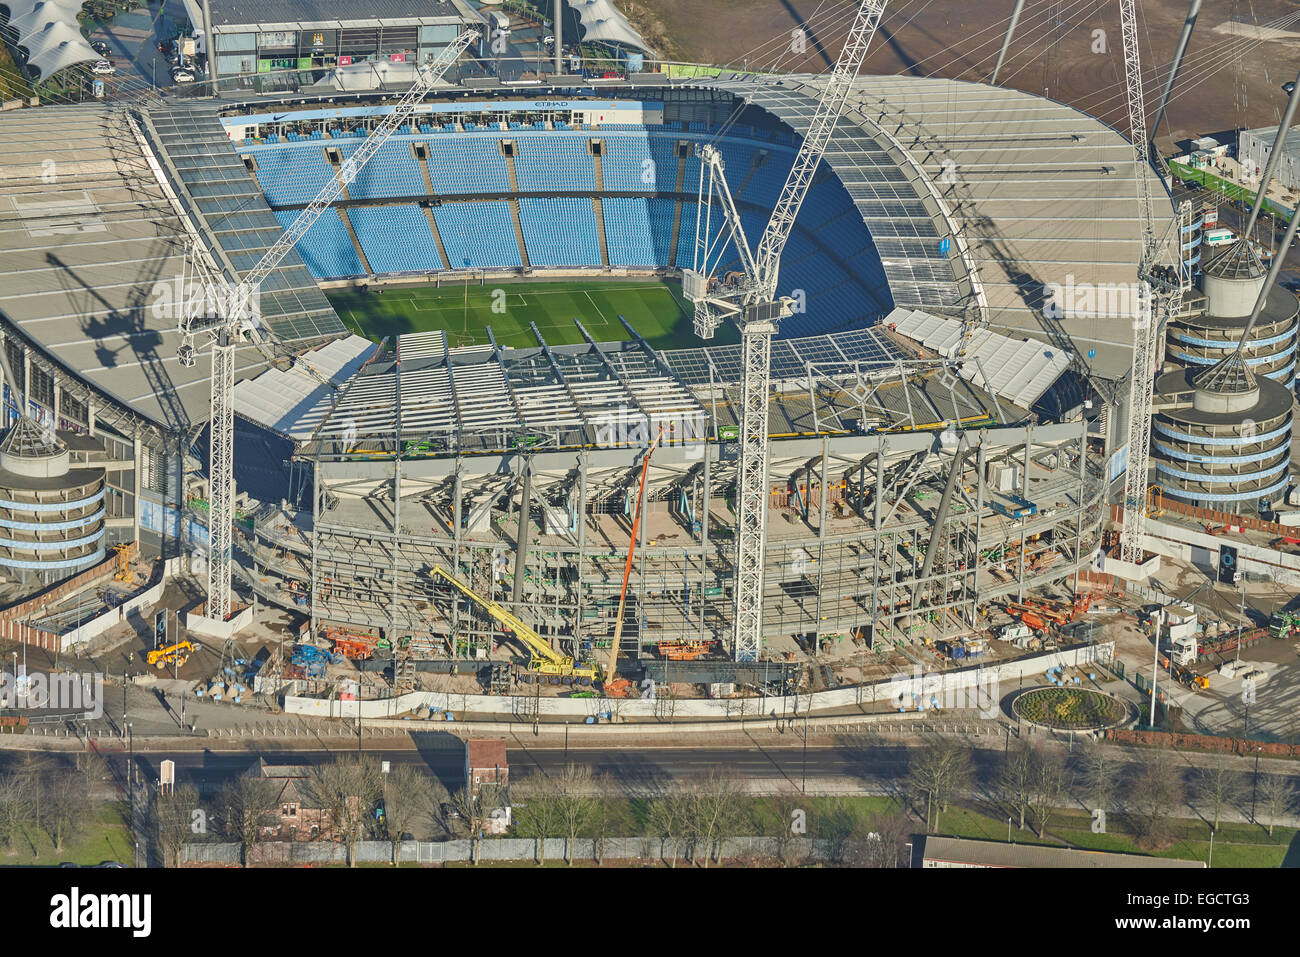 Fotografía aérea del Etihad Stadium, Manchester City Football Club Foto de stock